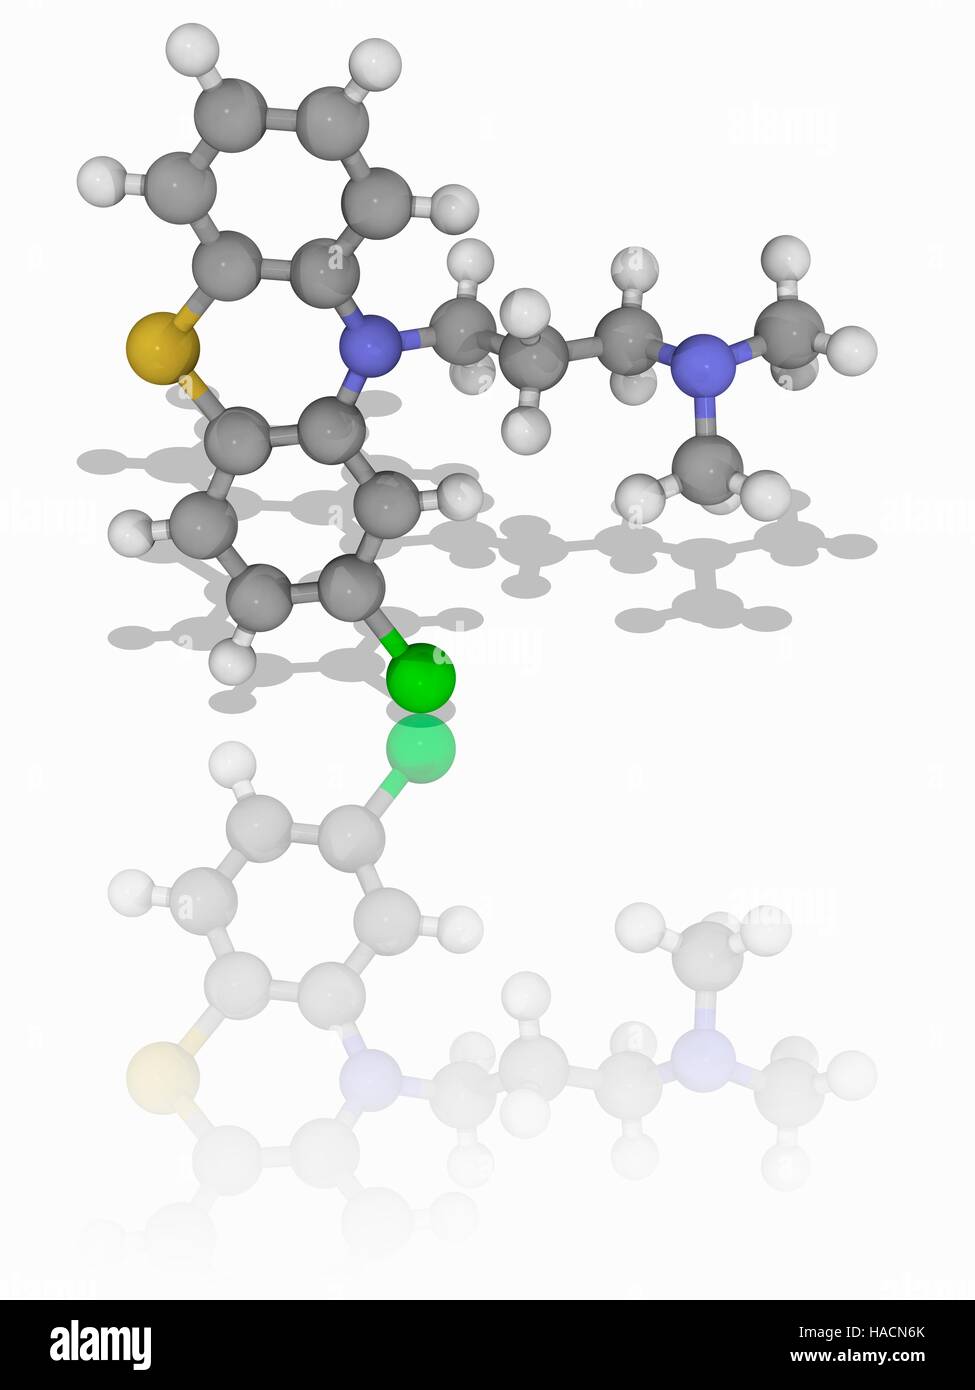 La clorpromazina. Modelo molecular del fármaco antipsicótico clorpromazina (C17.H19.Cl.N2.S). Este fue el primer fármaco que se desarrolló con una determinada acción anti-psicóticos, y utilizada para el tratamiento de psicosis, como la esquizofrenia. Es un antagonista de la dopamina, el bloqueo de los receptores del neurotransmisor dopamina. Los átomos son representados como esferas y están codificados por color (gris): carbono, hidrógeno, nitrógeno (blanco) (azul), el cloro (verde) y azufre (amarillo). Ilustración. Foto de stock